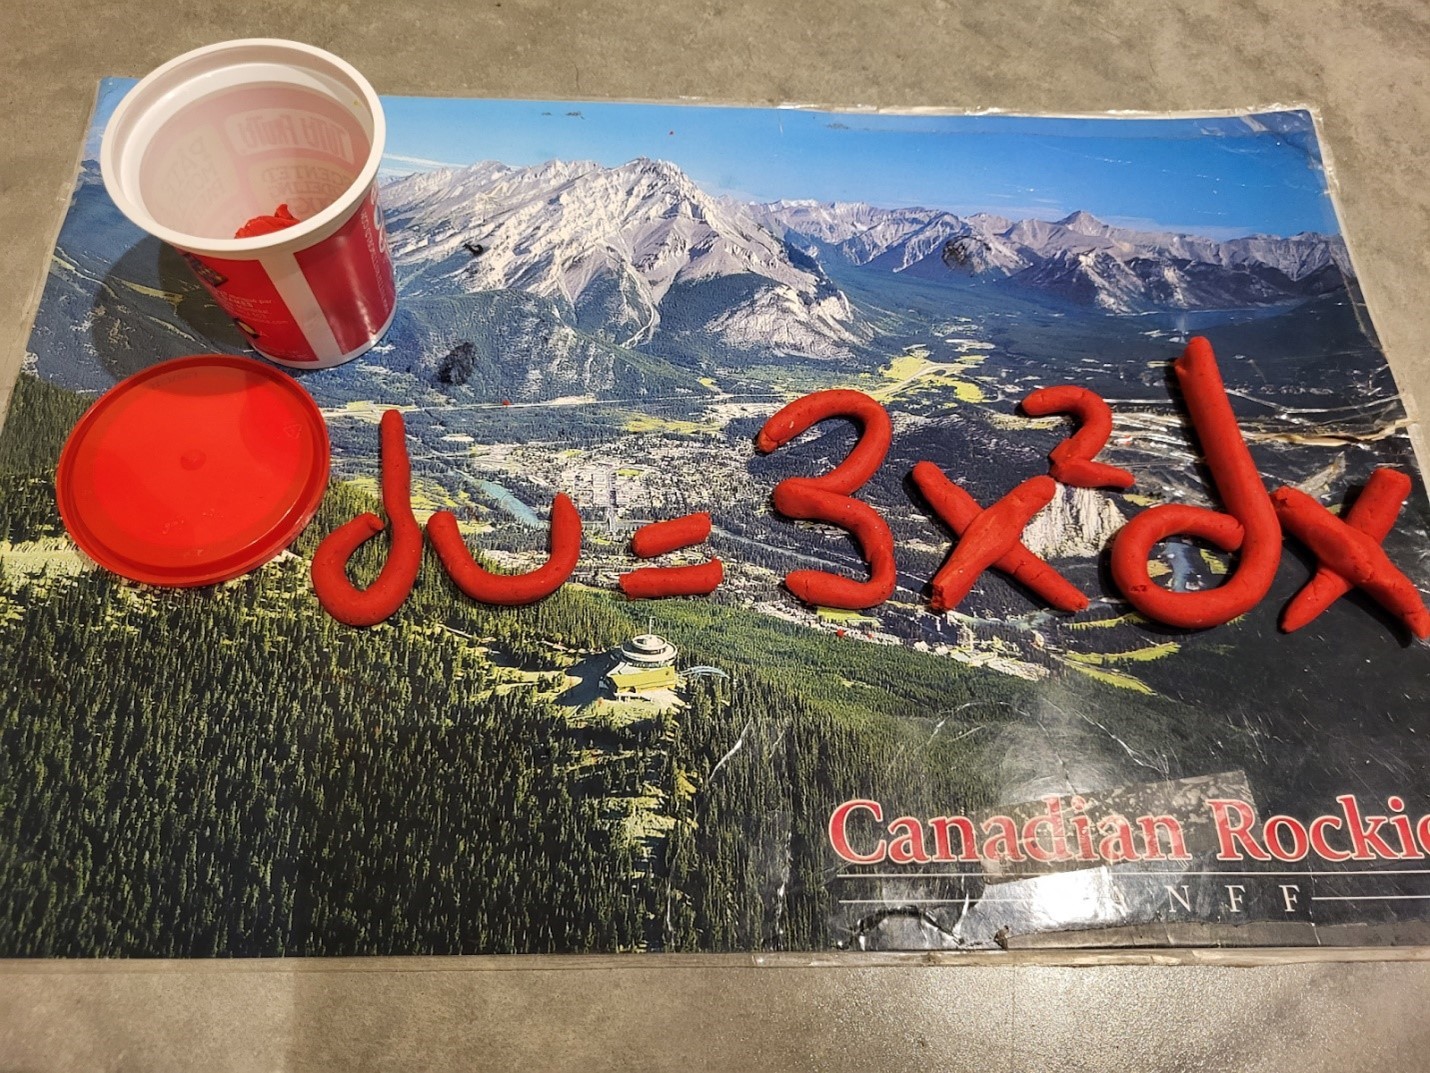 Un pot de pâte à modeler rouge est ouvert et posé sur un napperon vintage montrant une photo des rocheuses, sur lequel on lit "Canadian Rockies. Banff". De la pâte à modeler a été utilisée pour former les symboles d u = 3 x exposant 2 d x.